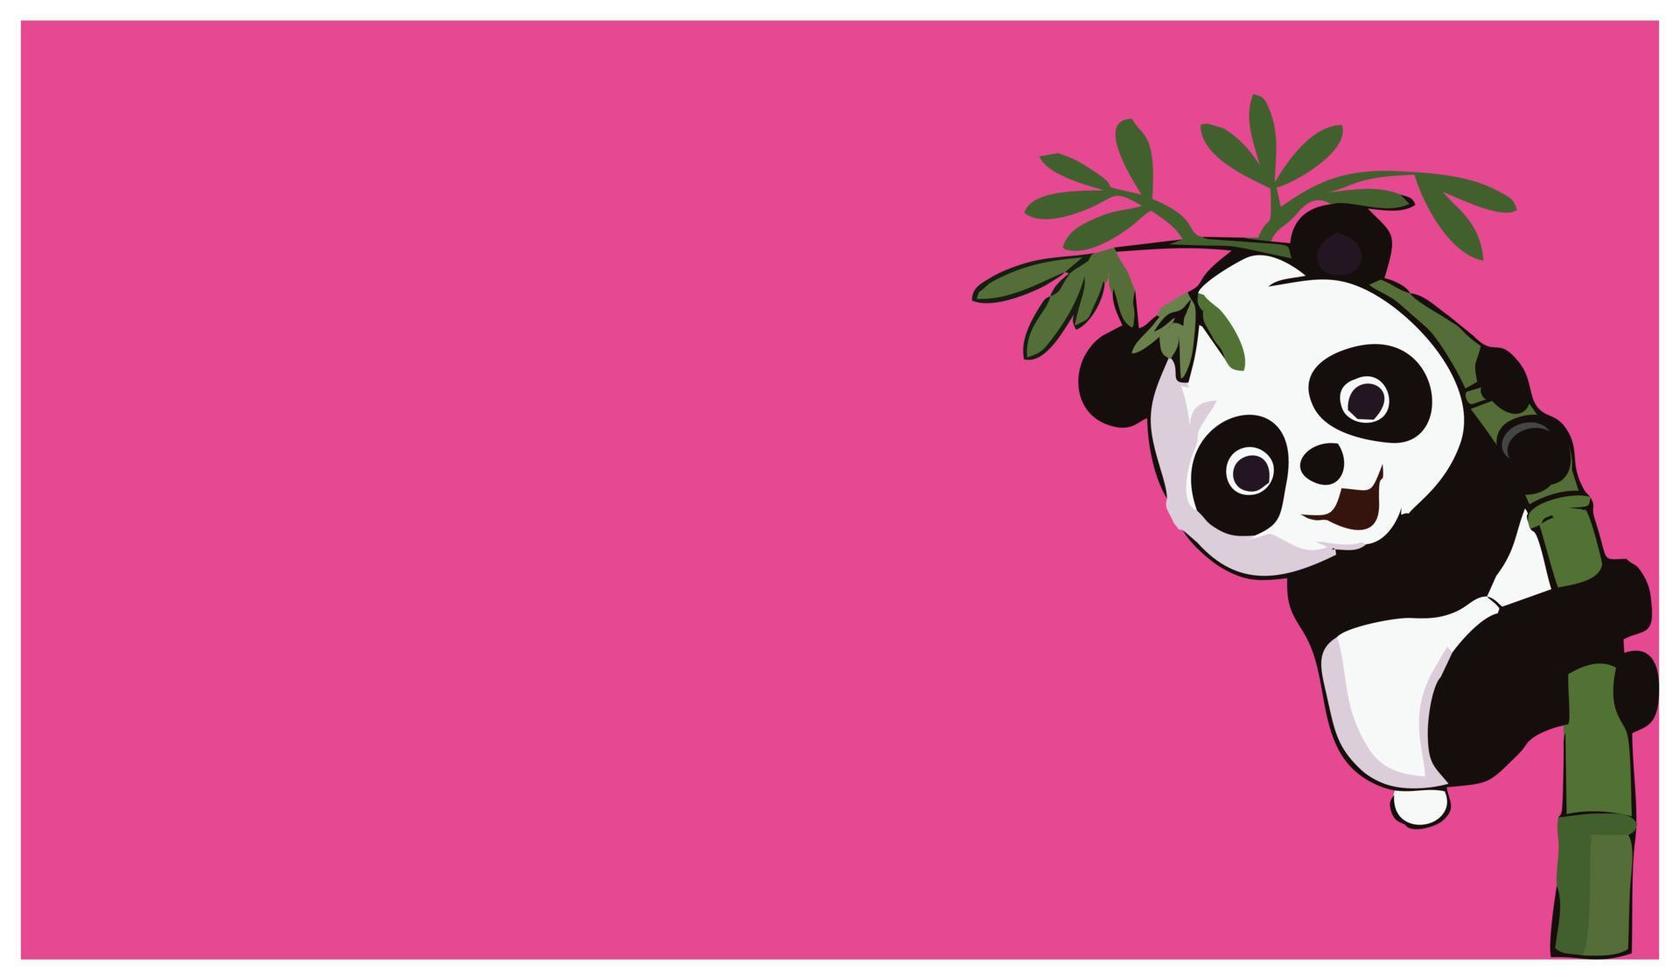 süßer pandabär mit bambus auf rosa hintergrund. Vektor-Illustration. geeignet für die Verwendung in Designvorlagen für Kinder vektor